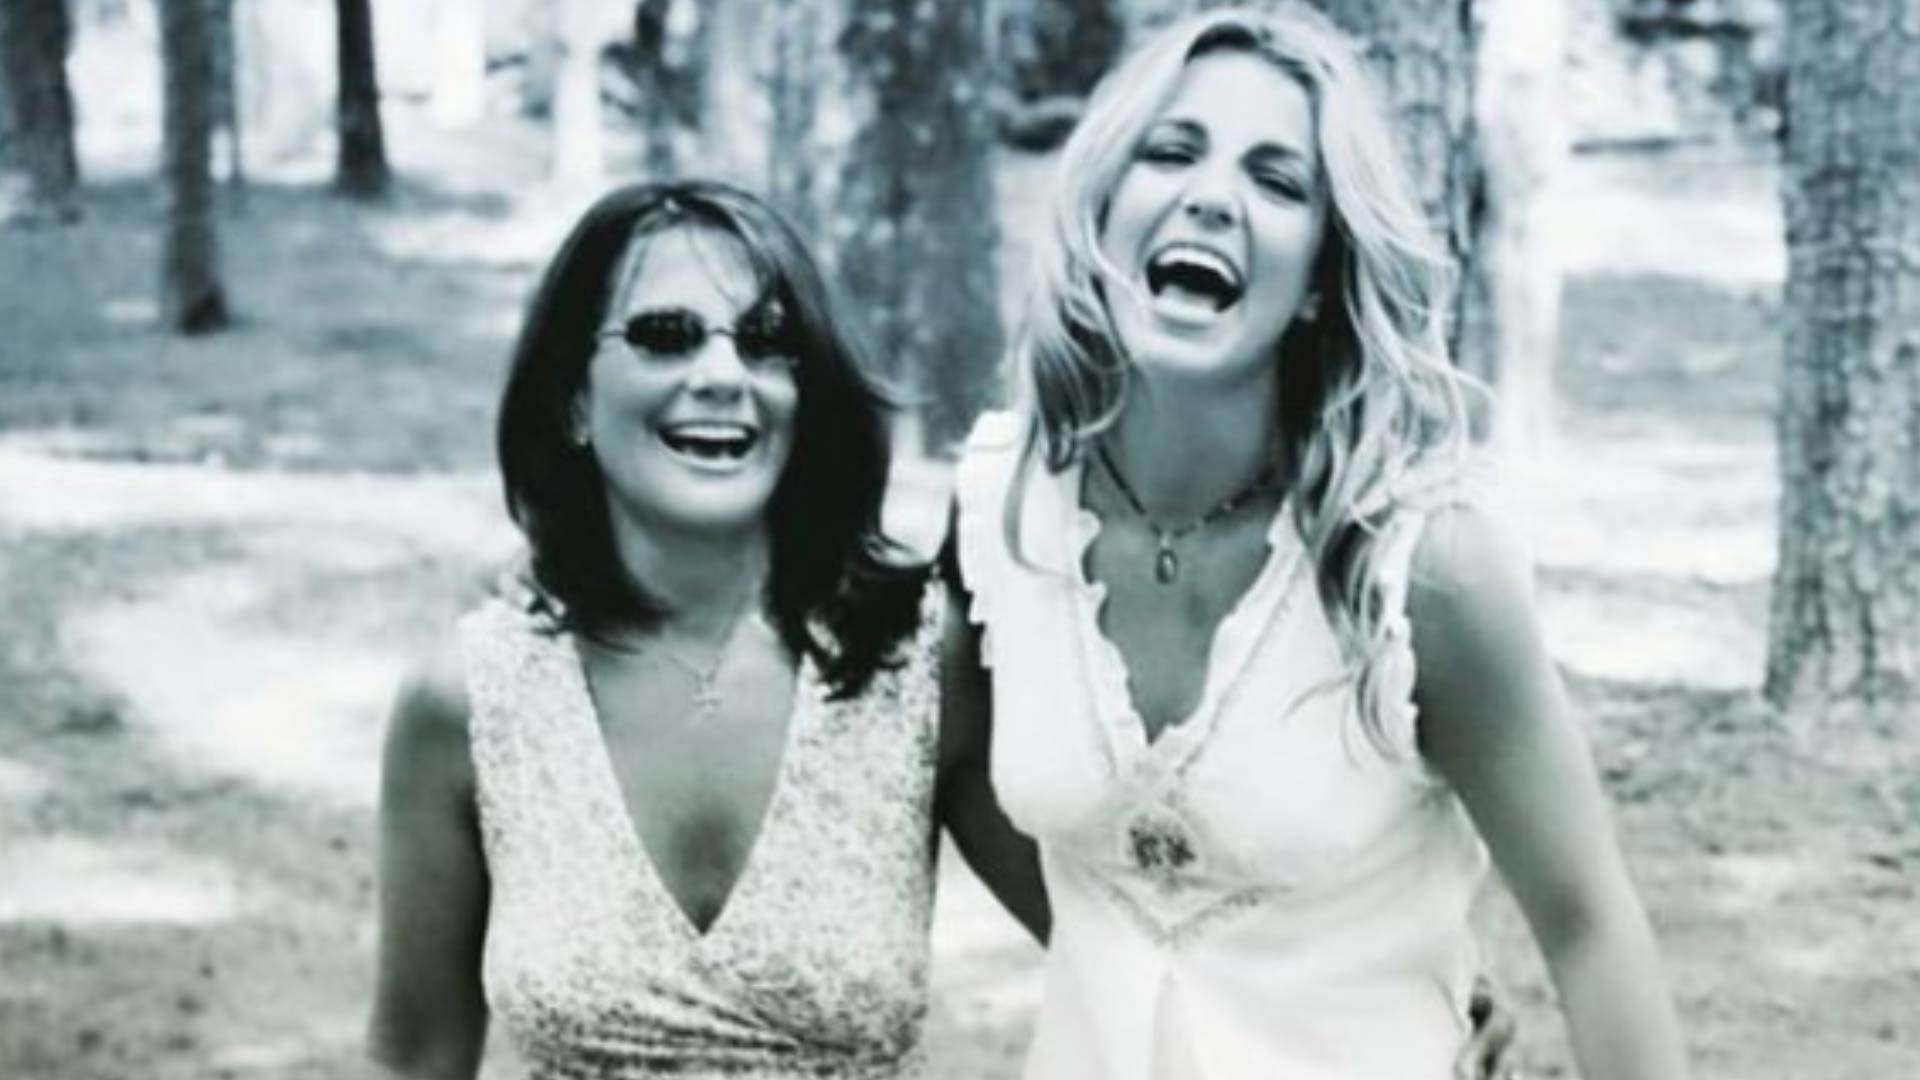 “¡He estado arrepentida durante años!”: la madre de Britney Spears le suplicó que la perdone